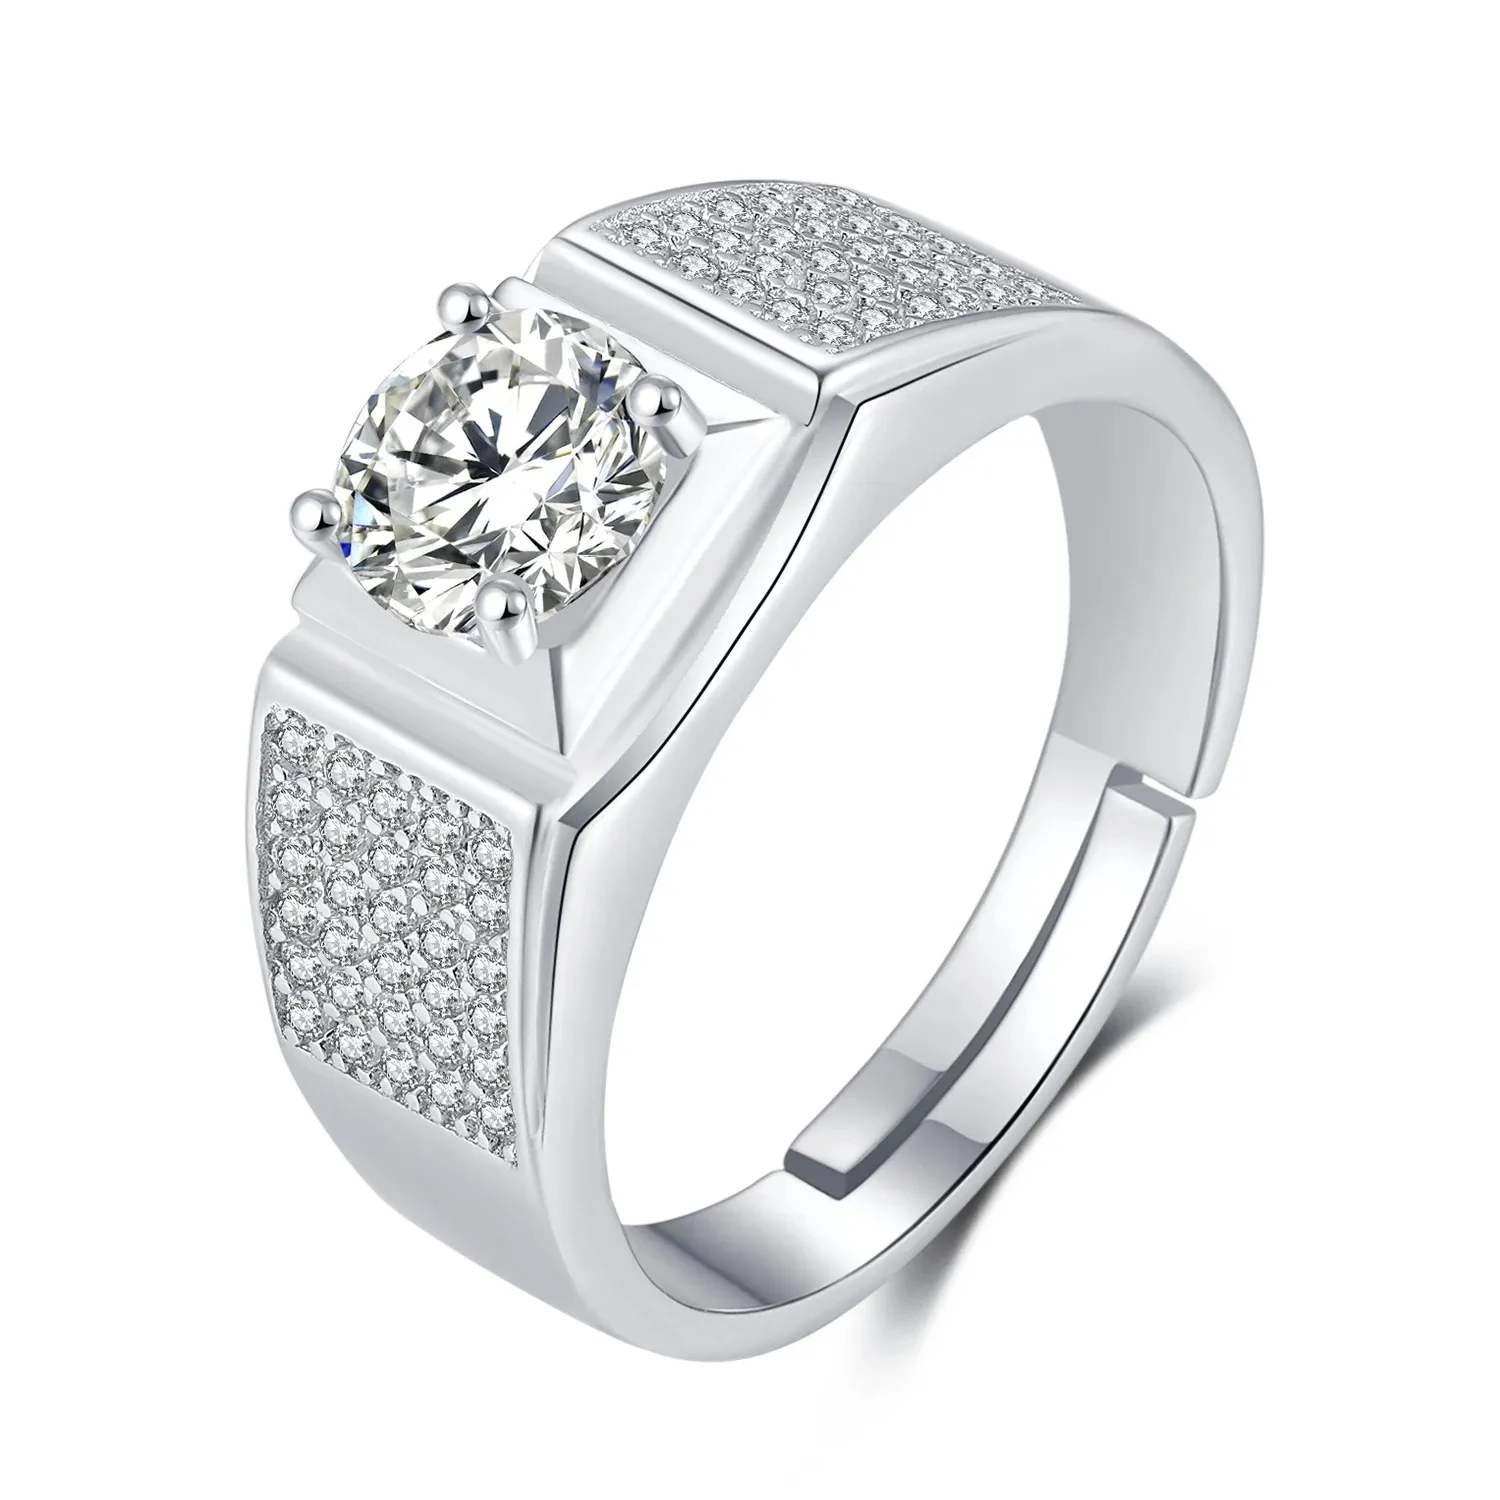 Ring mit Mossan-Stein aus S925-Silber, Platin mit Mikroeinlage, Multy-Diamant, herrschsüchtiger Hochzeitsantrag, männlicher Schmuck für Freund